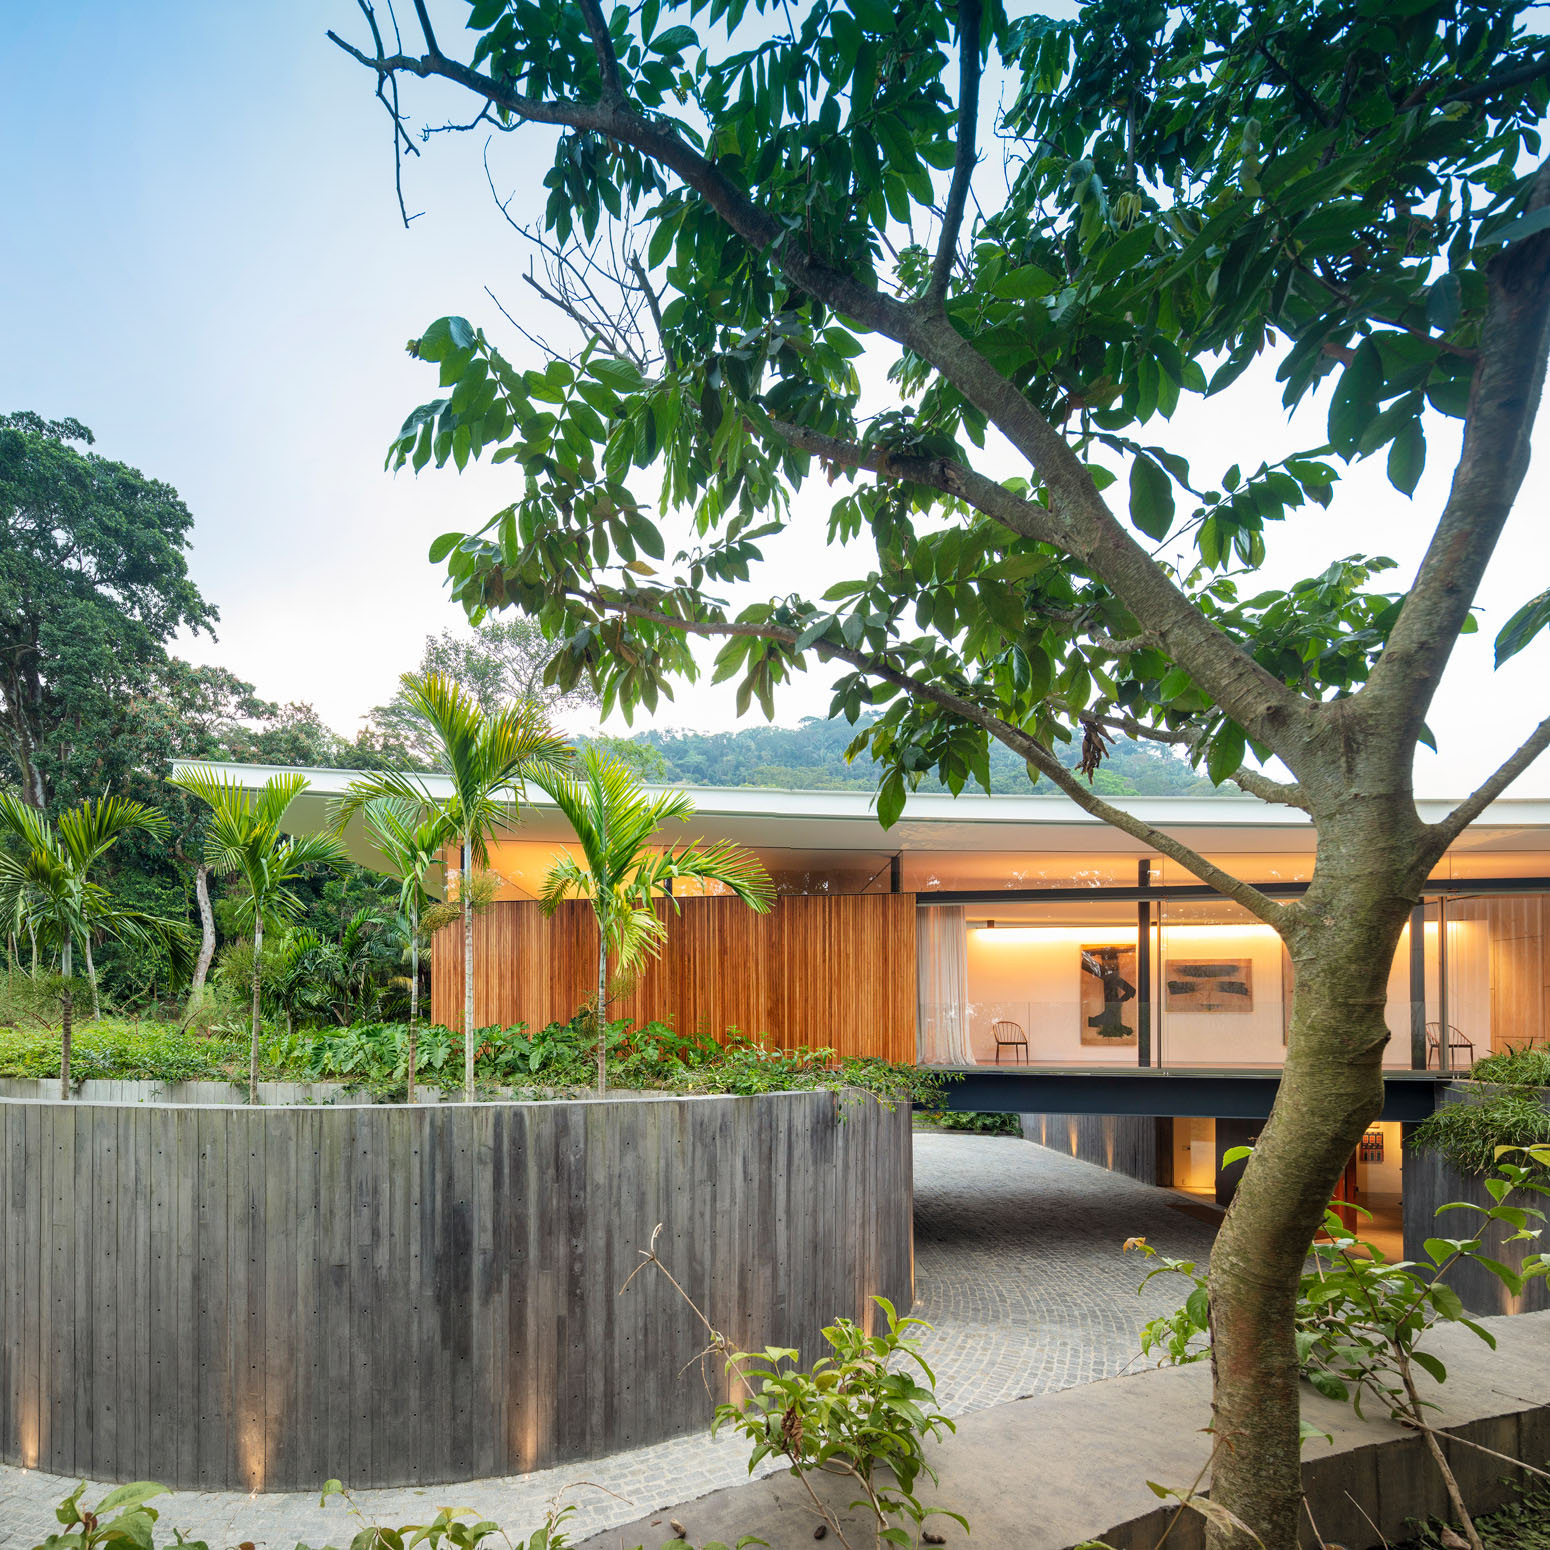 Afscheid Van Vermindering Bernardes Arquitetura tops Rio de Janeiro villa with wing-shaped roof